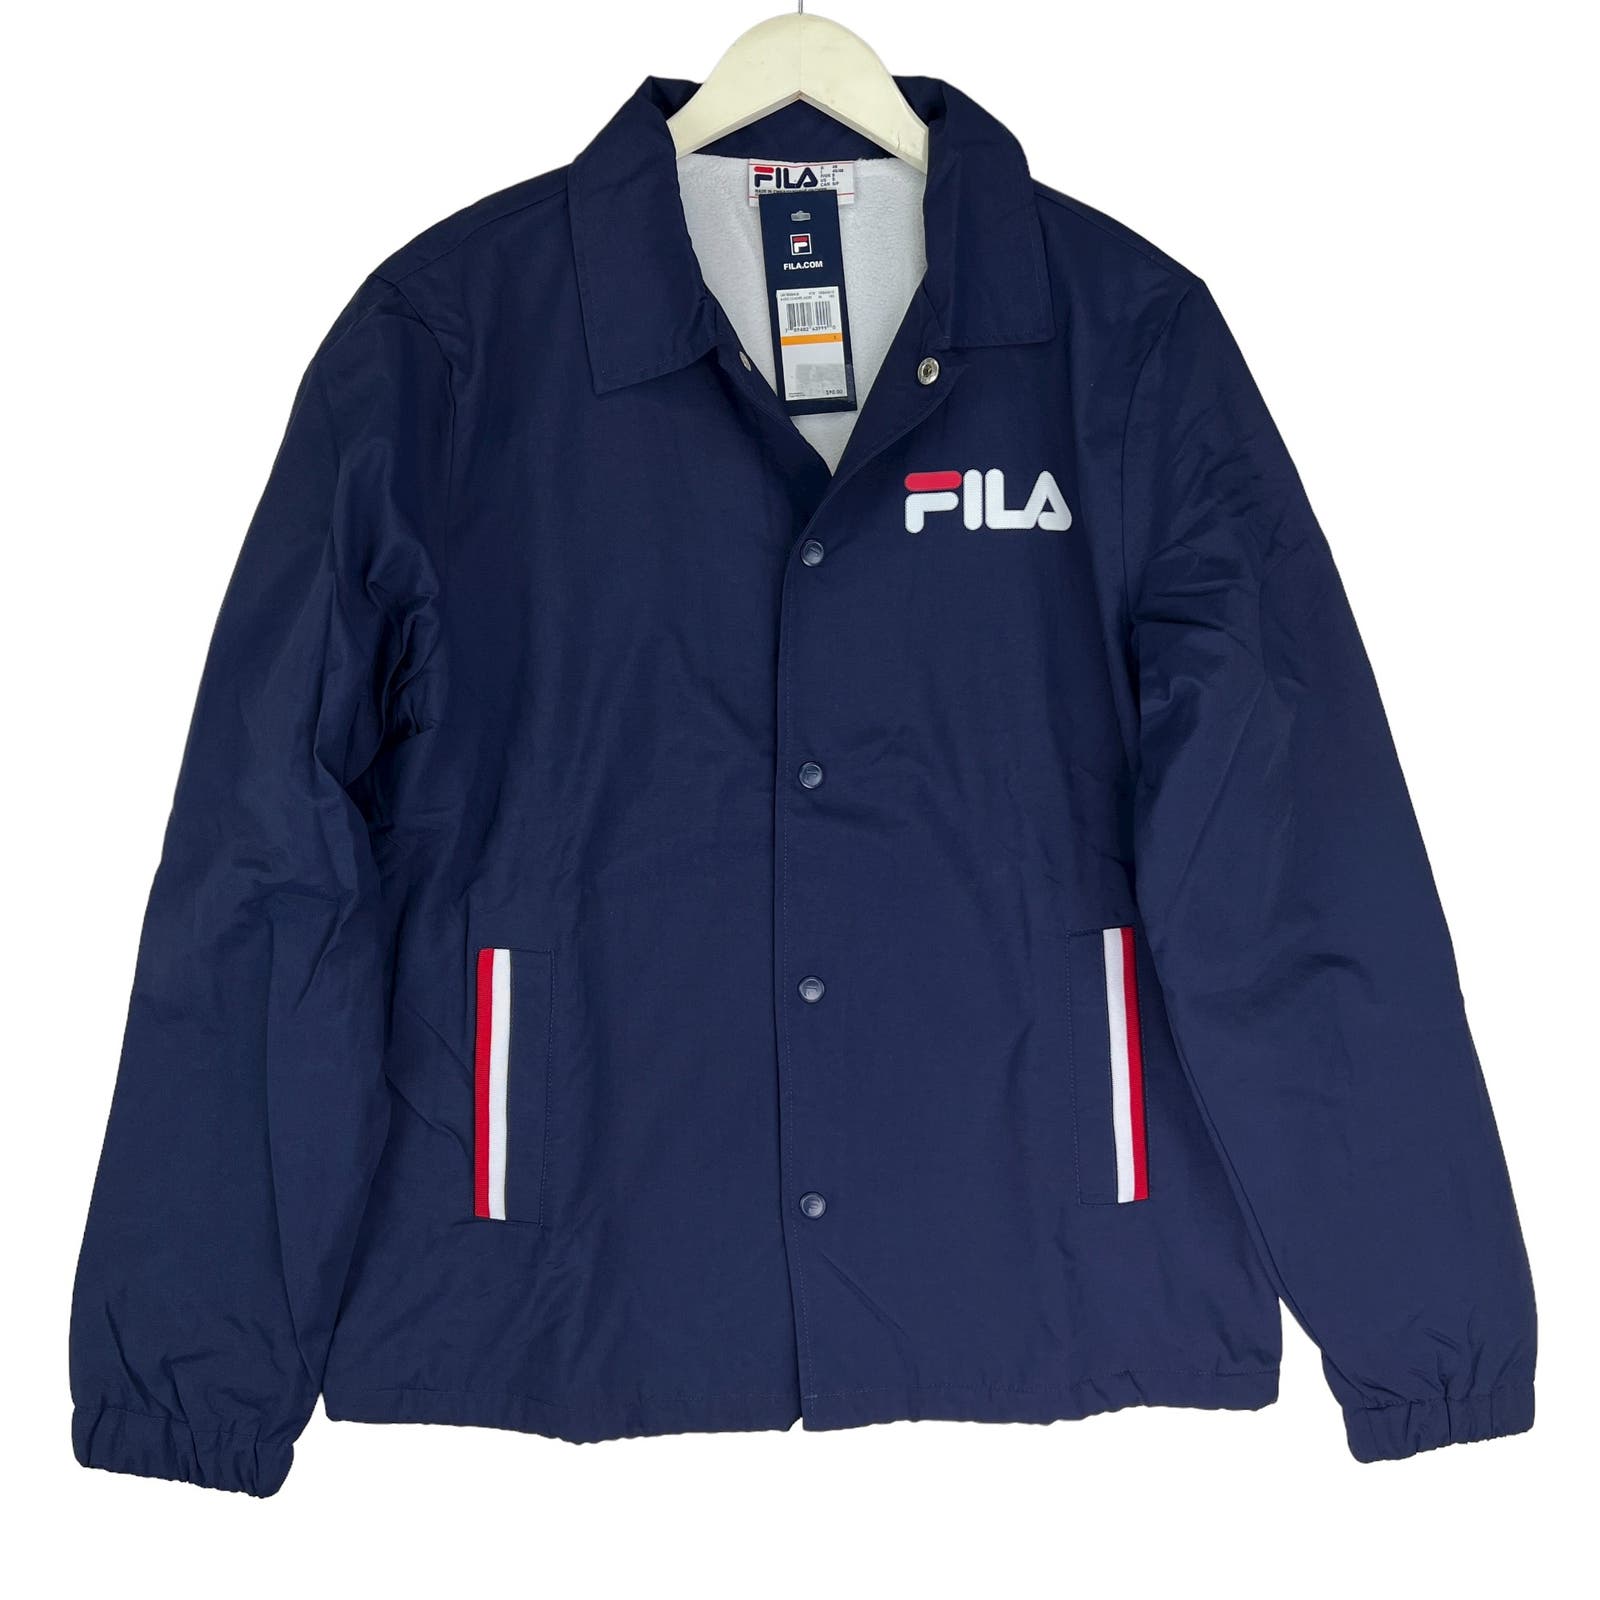 FILA Men Navy Sports Jacket US M Long Sleeves Windbreaker